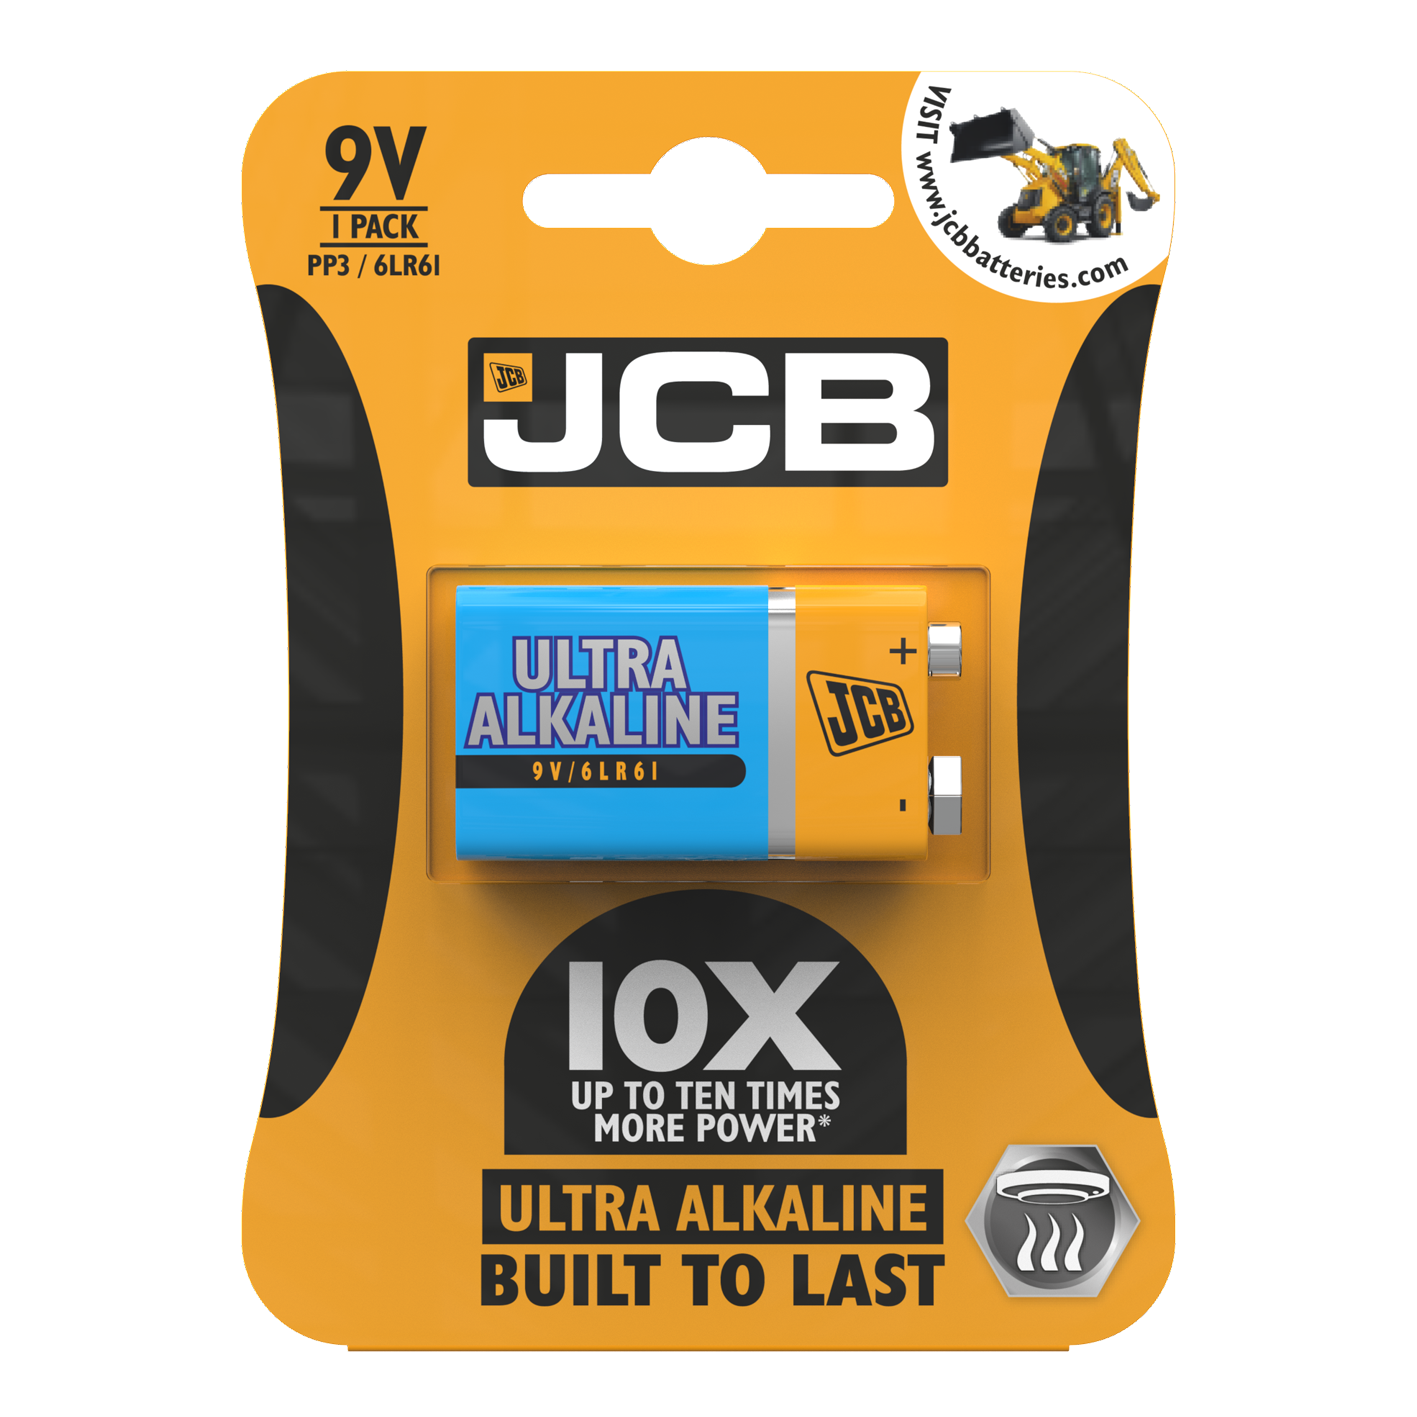 JCB 9V Ultra Alkaline, Pack of 1